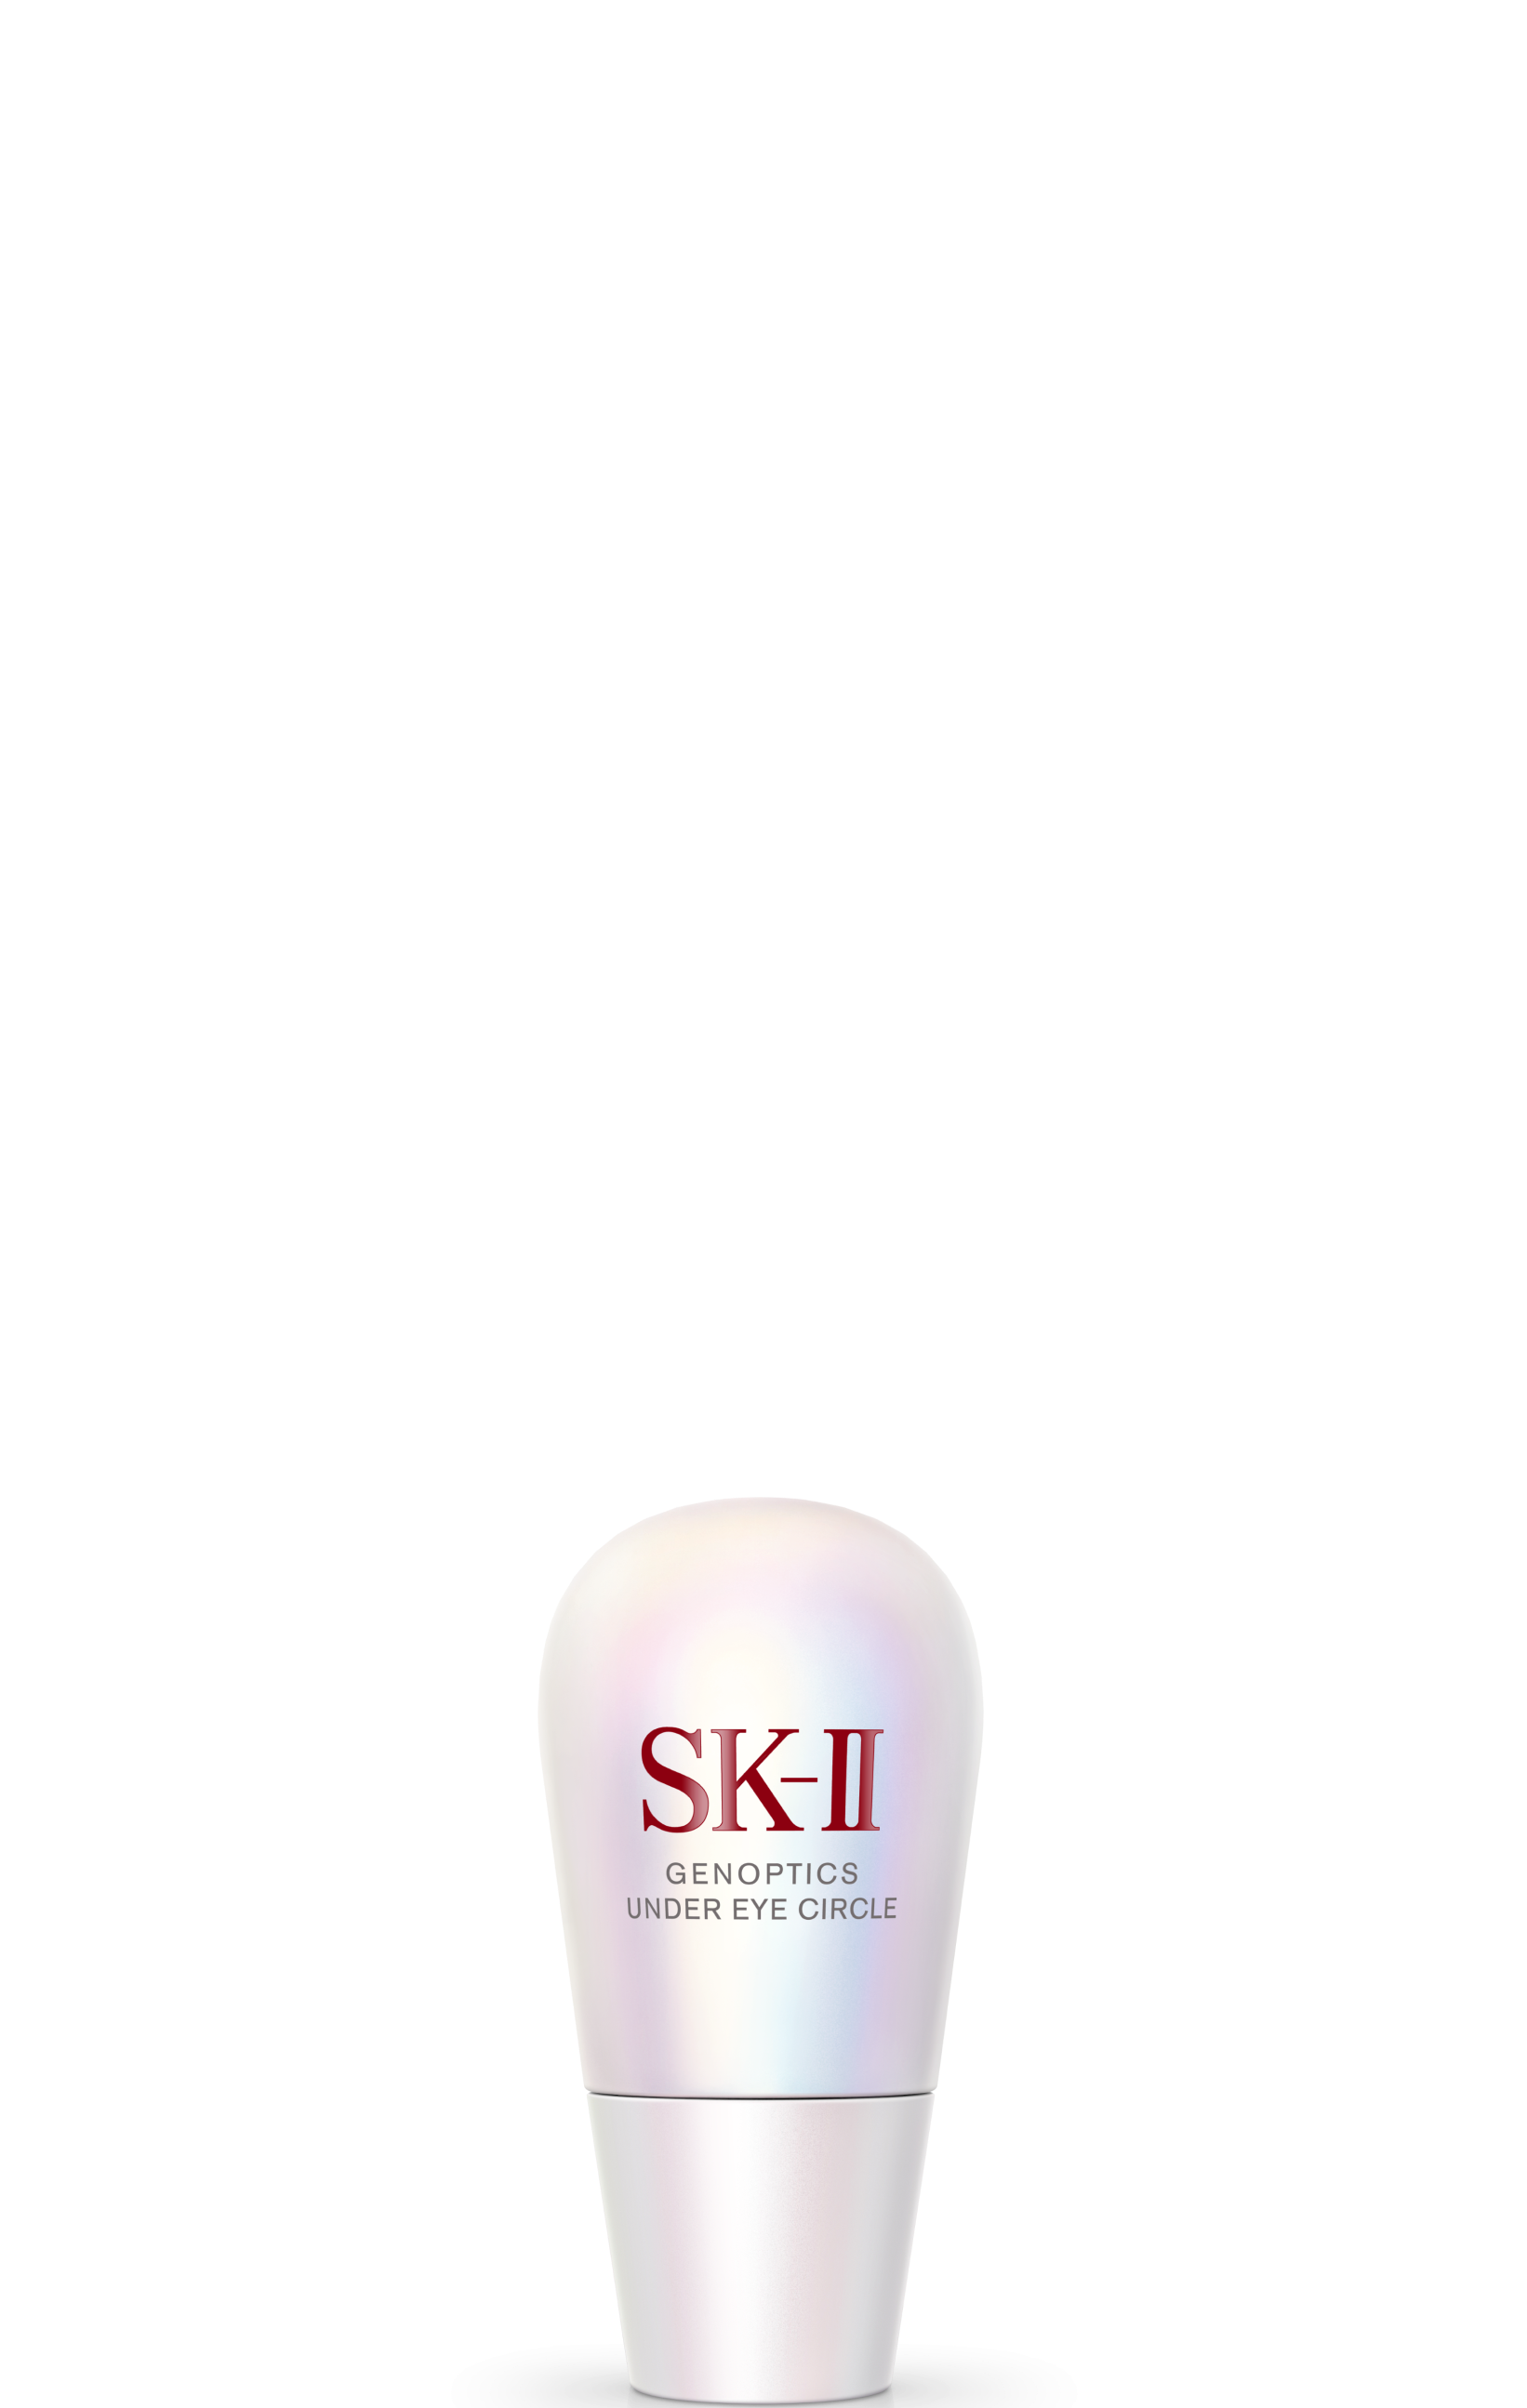 SK-II ジェノプティクス アンダー アイ サークル アイケア オンライン店舗 大阪